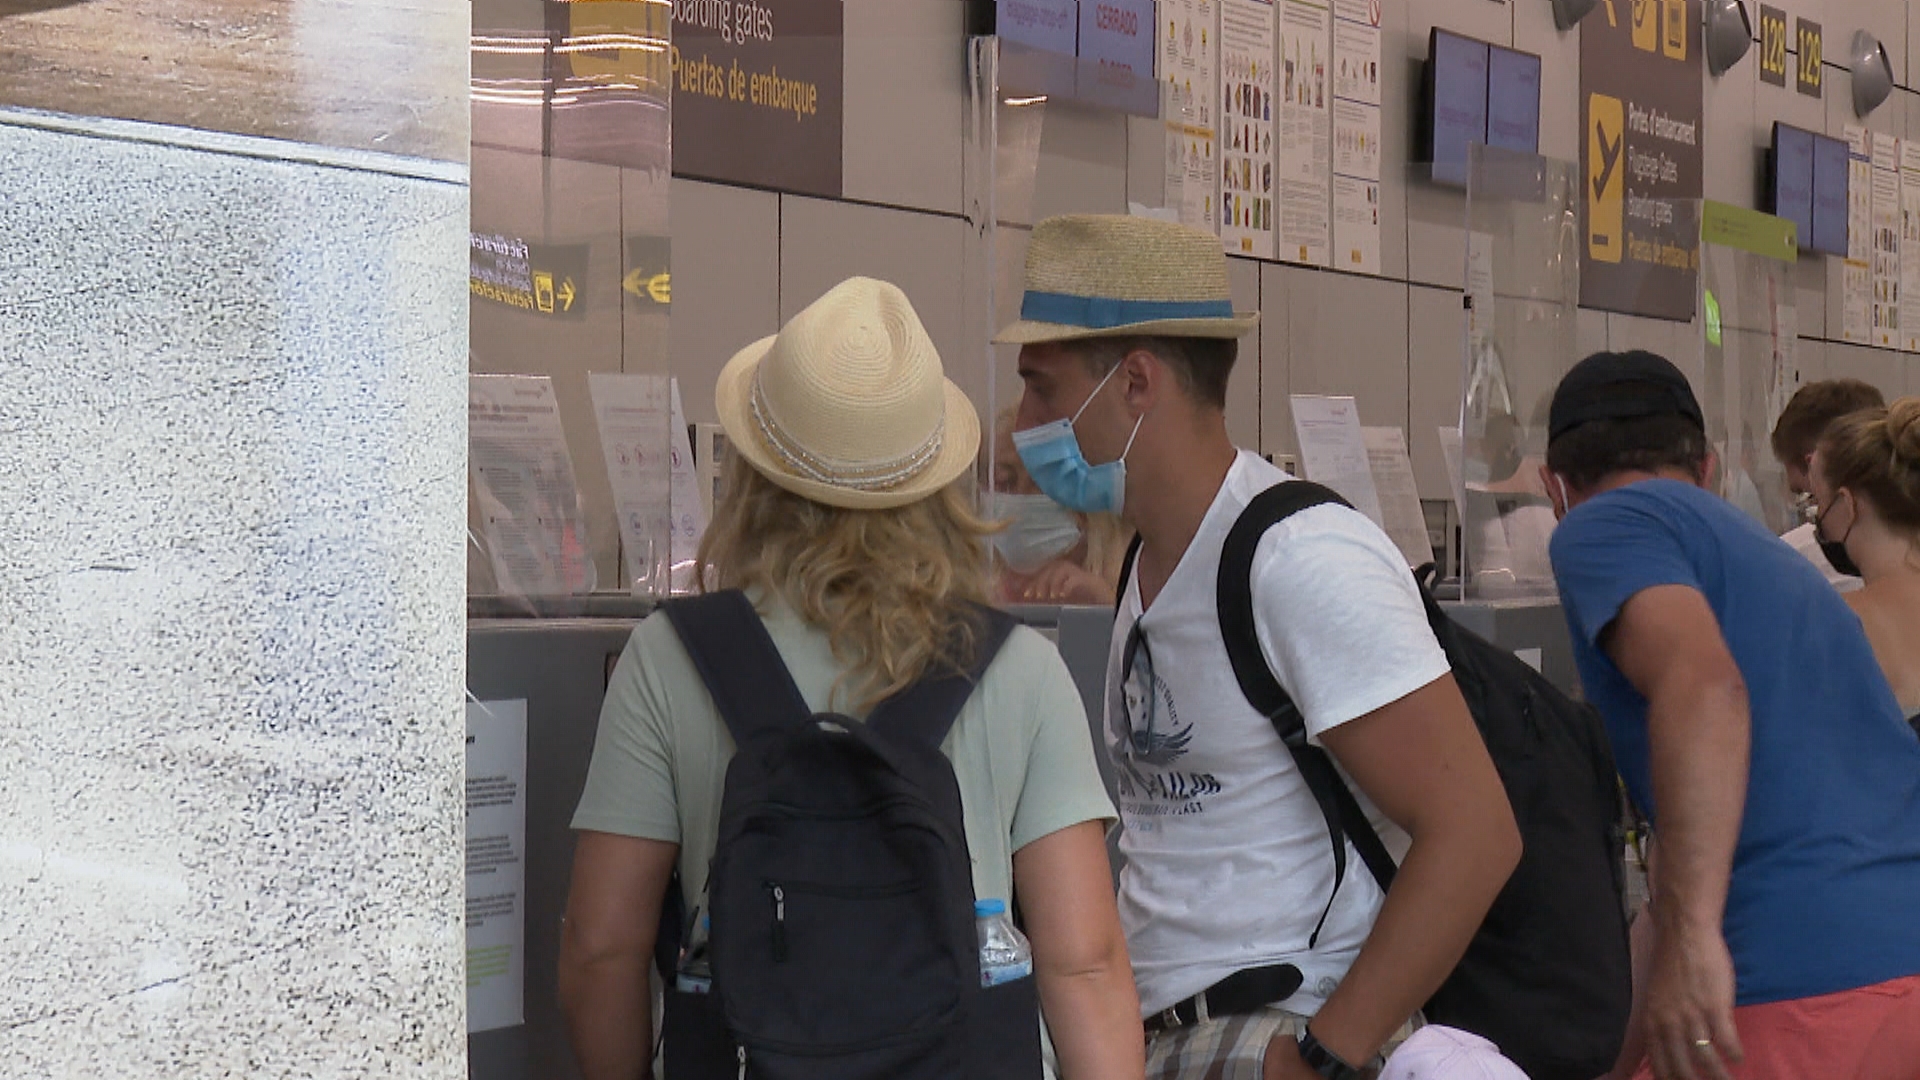 Alguns+turistes+alemanys+tornen+abans+per+evitar+la+quarantena